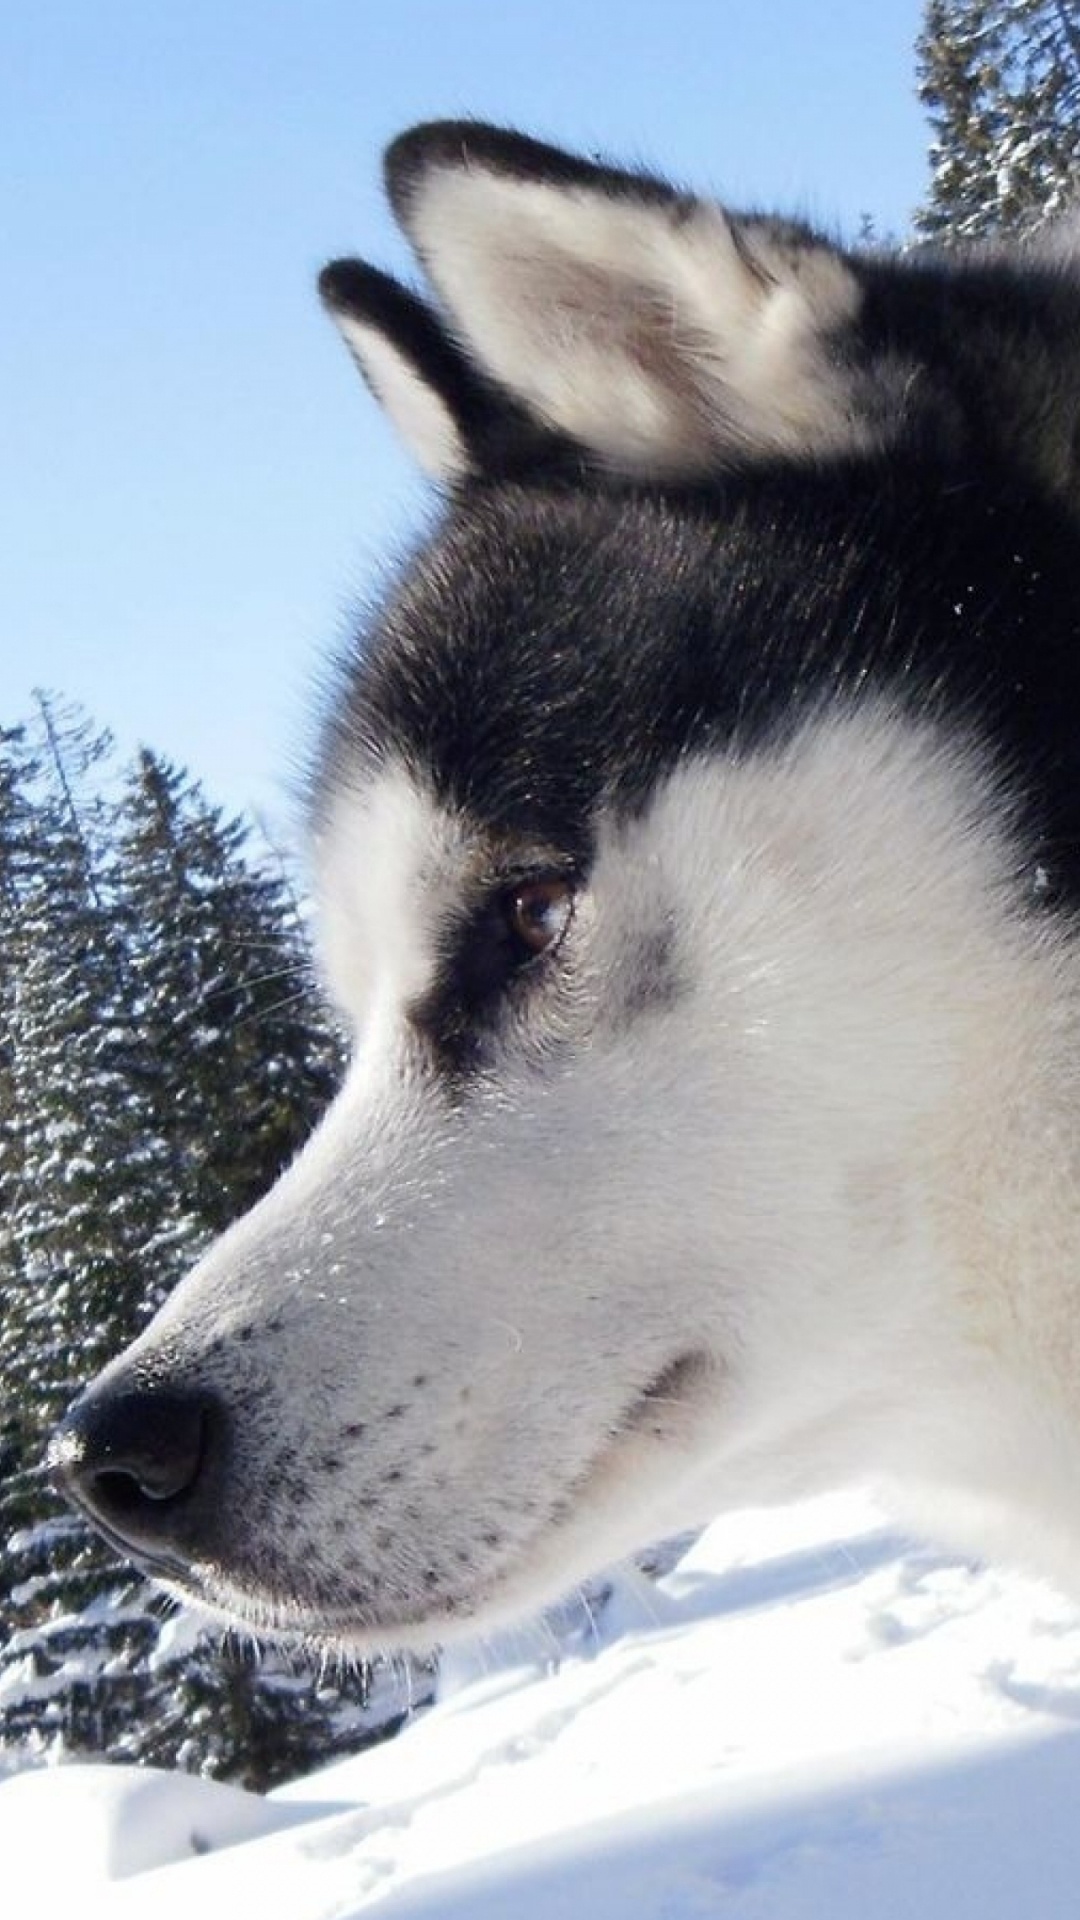 阿拉斯加雪橇犬, 赫斯基, 萨哈林赫斯基, 雪橇狗, 哈士奇 壁纸 1080x1920 允许